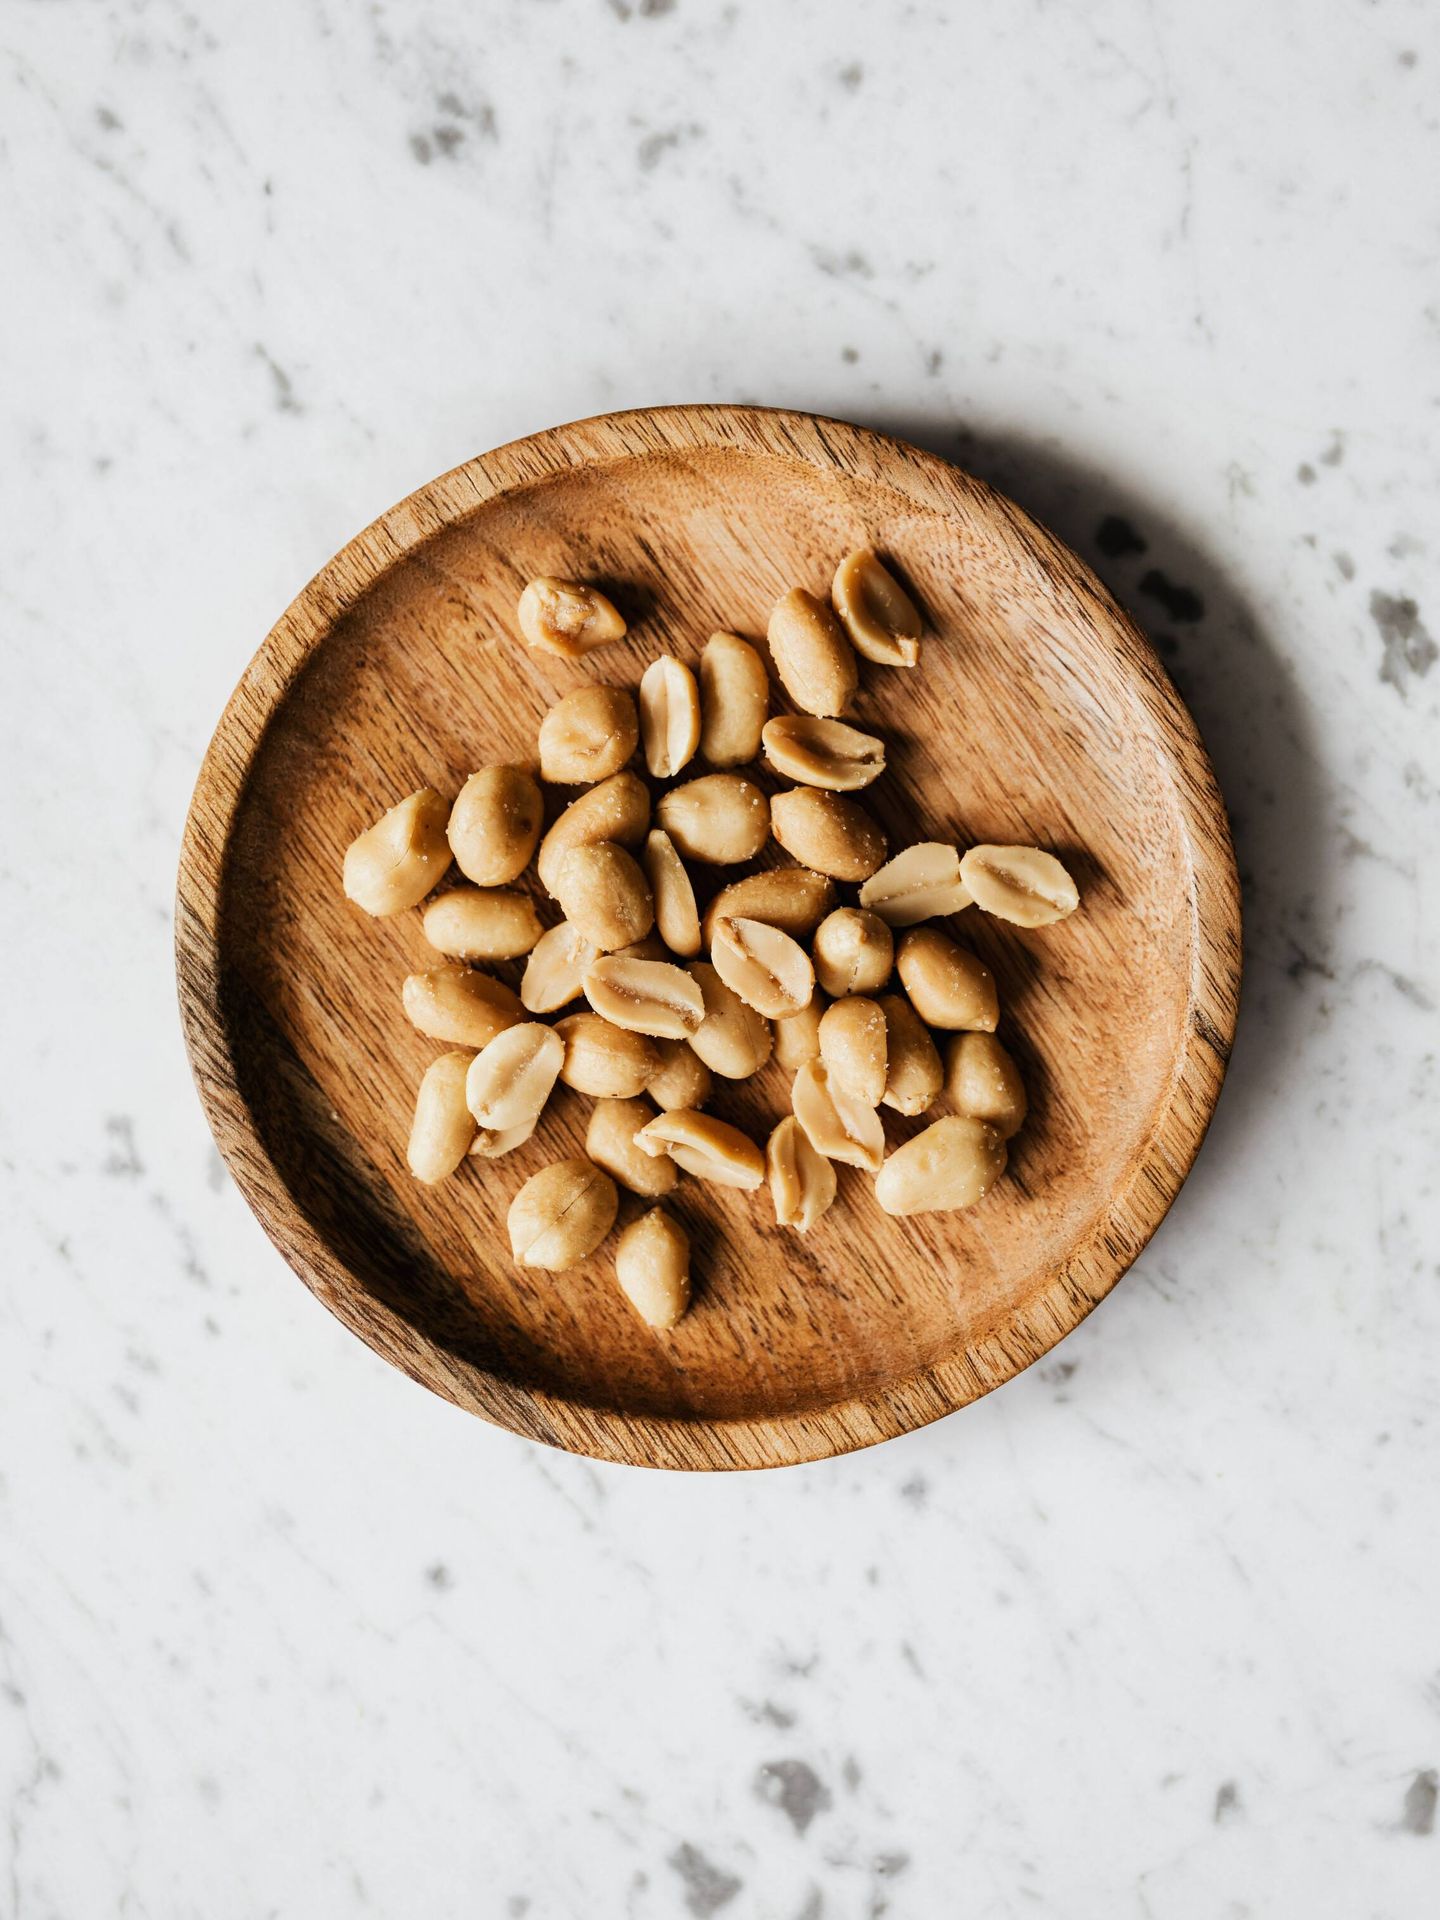 Los cacahuetes también son una buena fuente de nutrientes. (Pexels/ Karolina Grabowska)